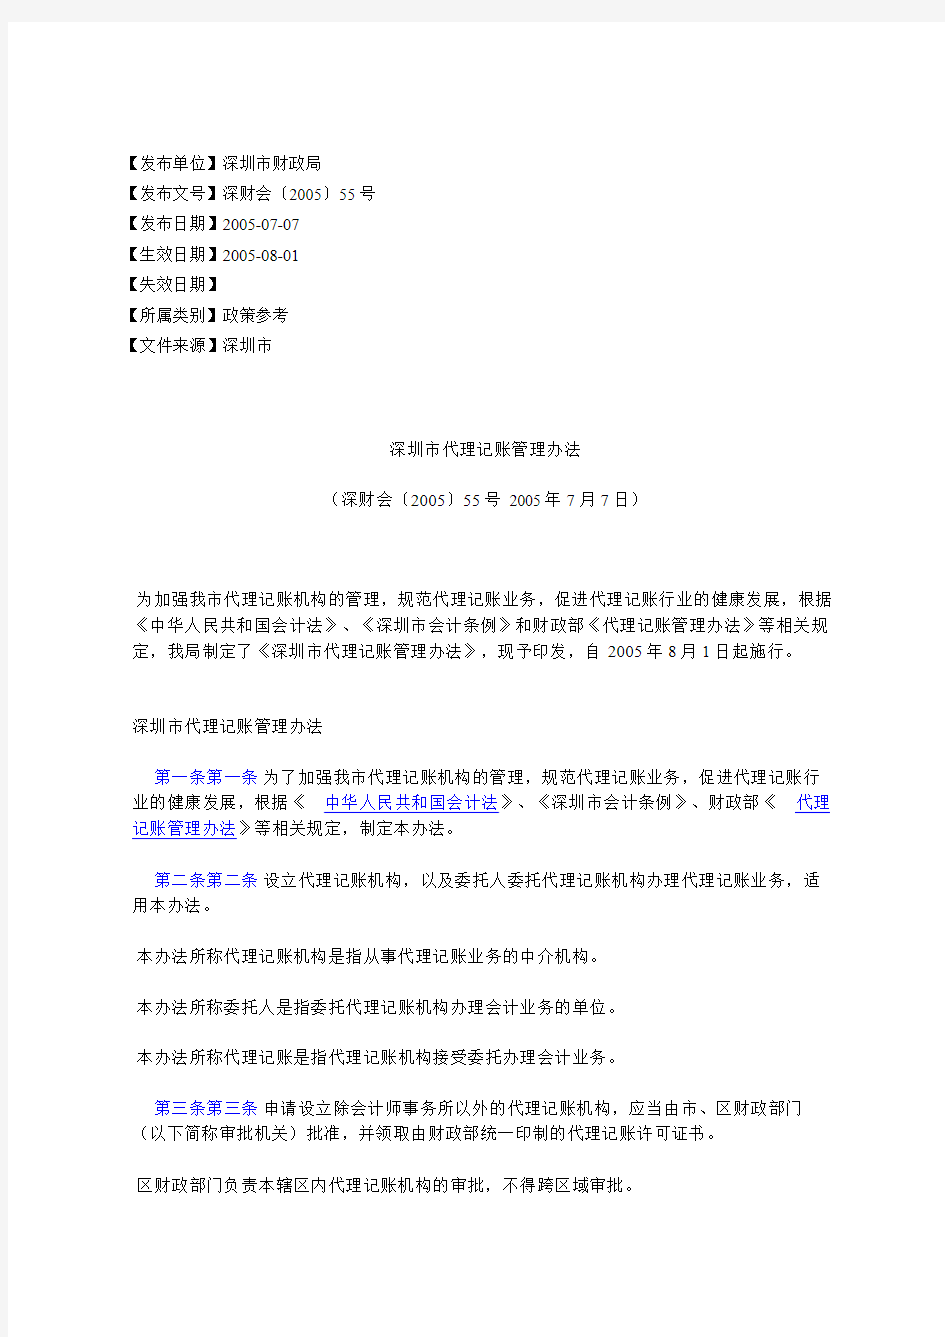 深圳市代理记账管理办法(深财会〔2005〕55号2005年7月7日)